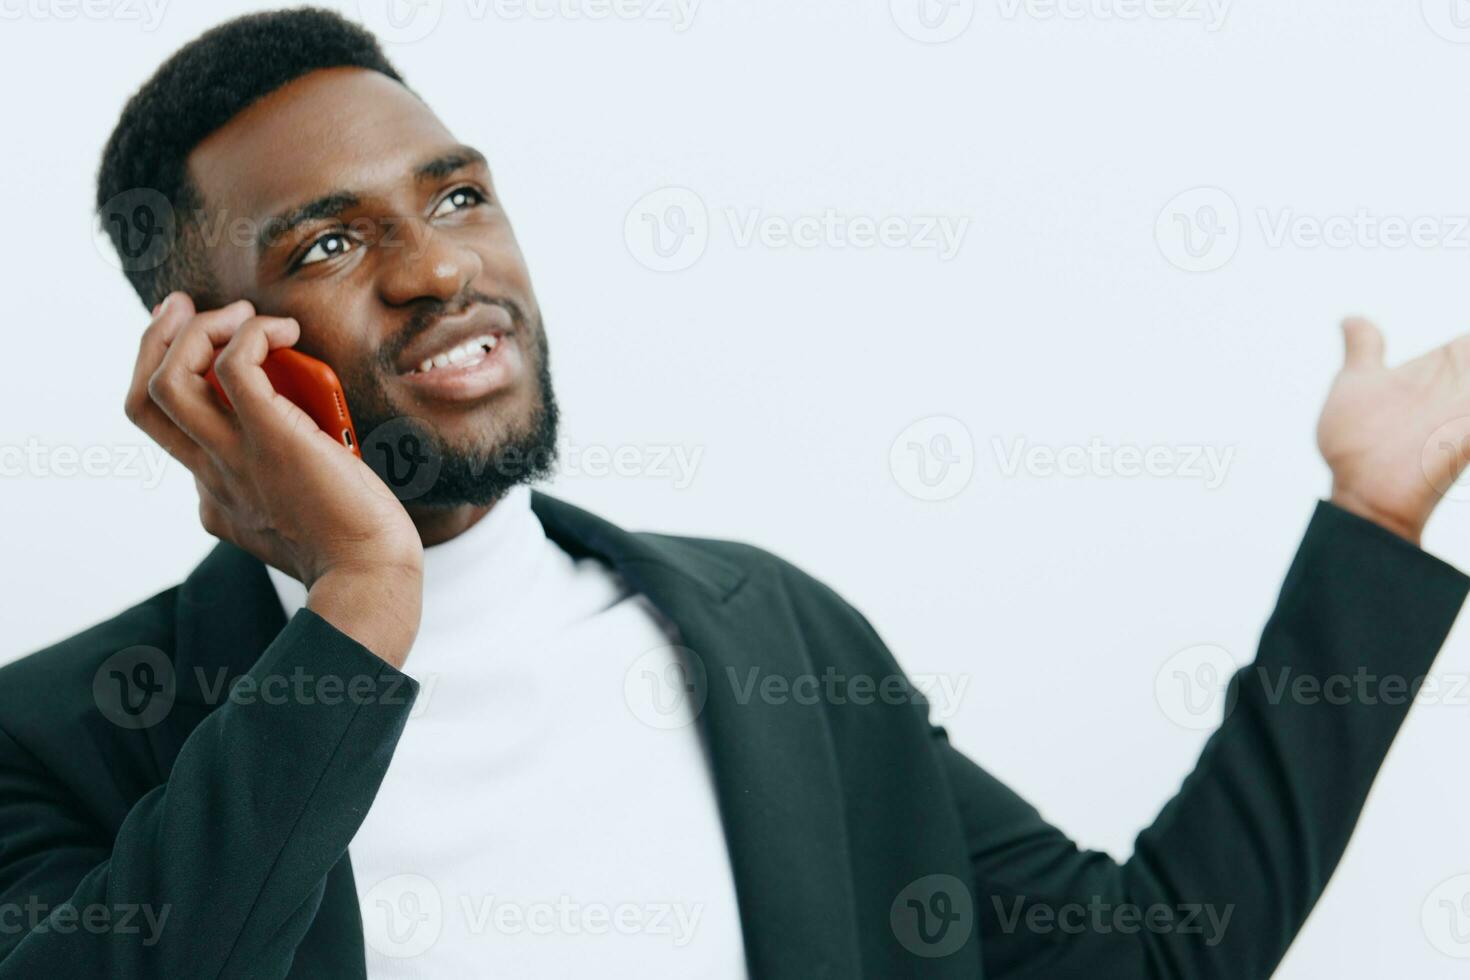 La technologie homme Jeune content noir mobile coloré sourire africain téléphone homme d'affaire photo